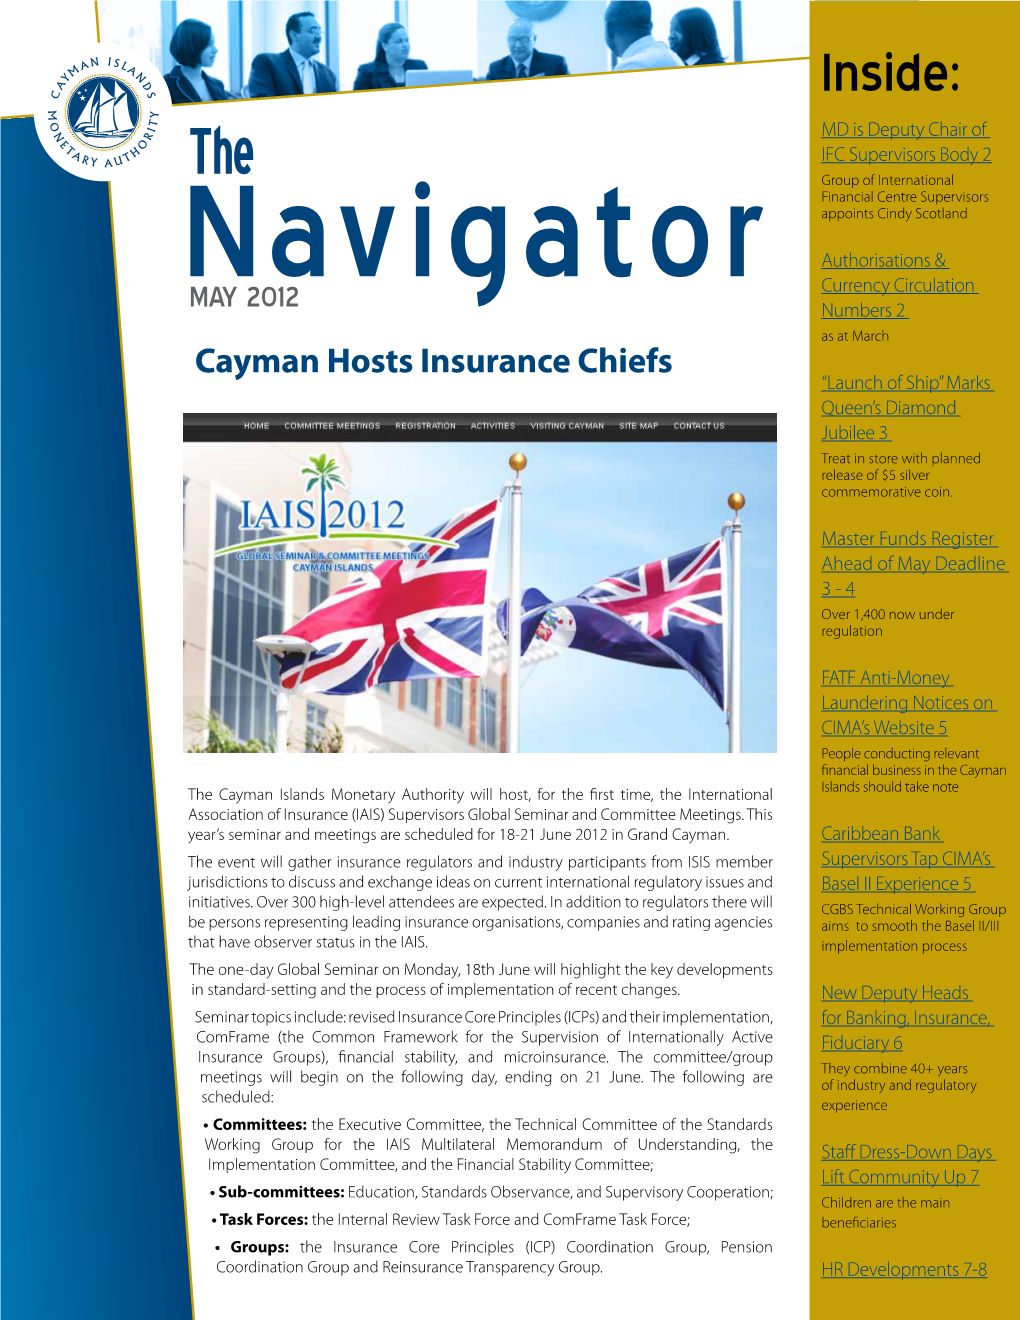 The Navigator May 2012